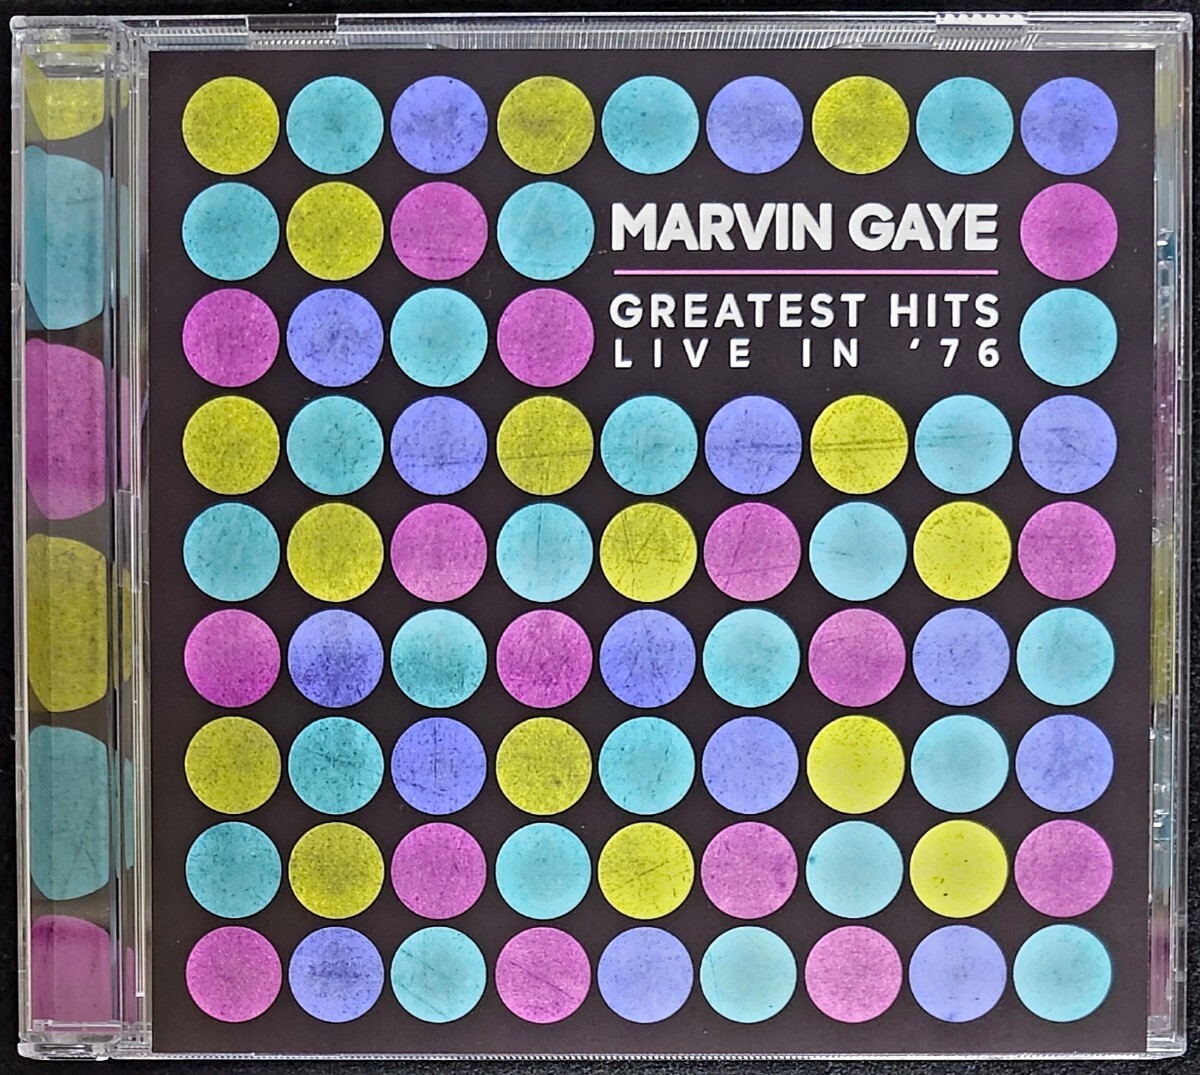 Marvin Gaye ◎ Greast Hits Live In '76〔1CD〕輸入盤 マービンゲイライブ モータウン ソウル ブラックミュージック R&B 